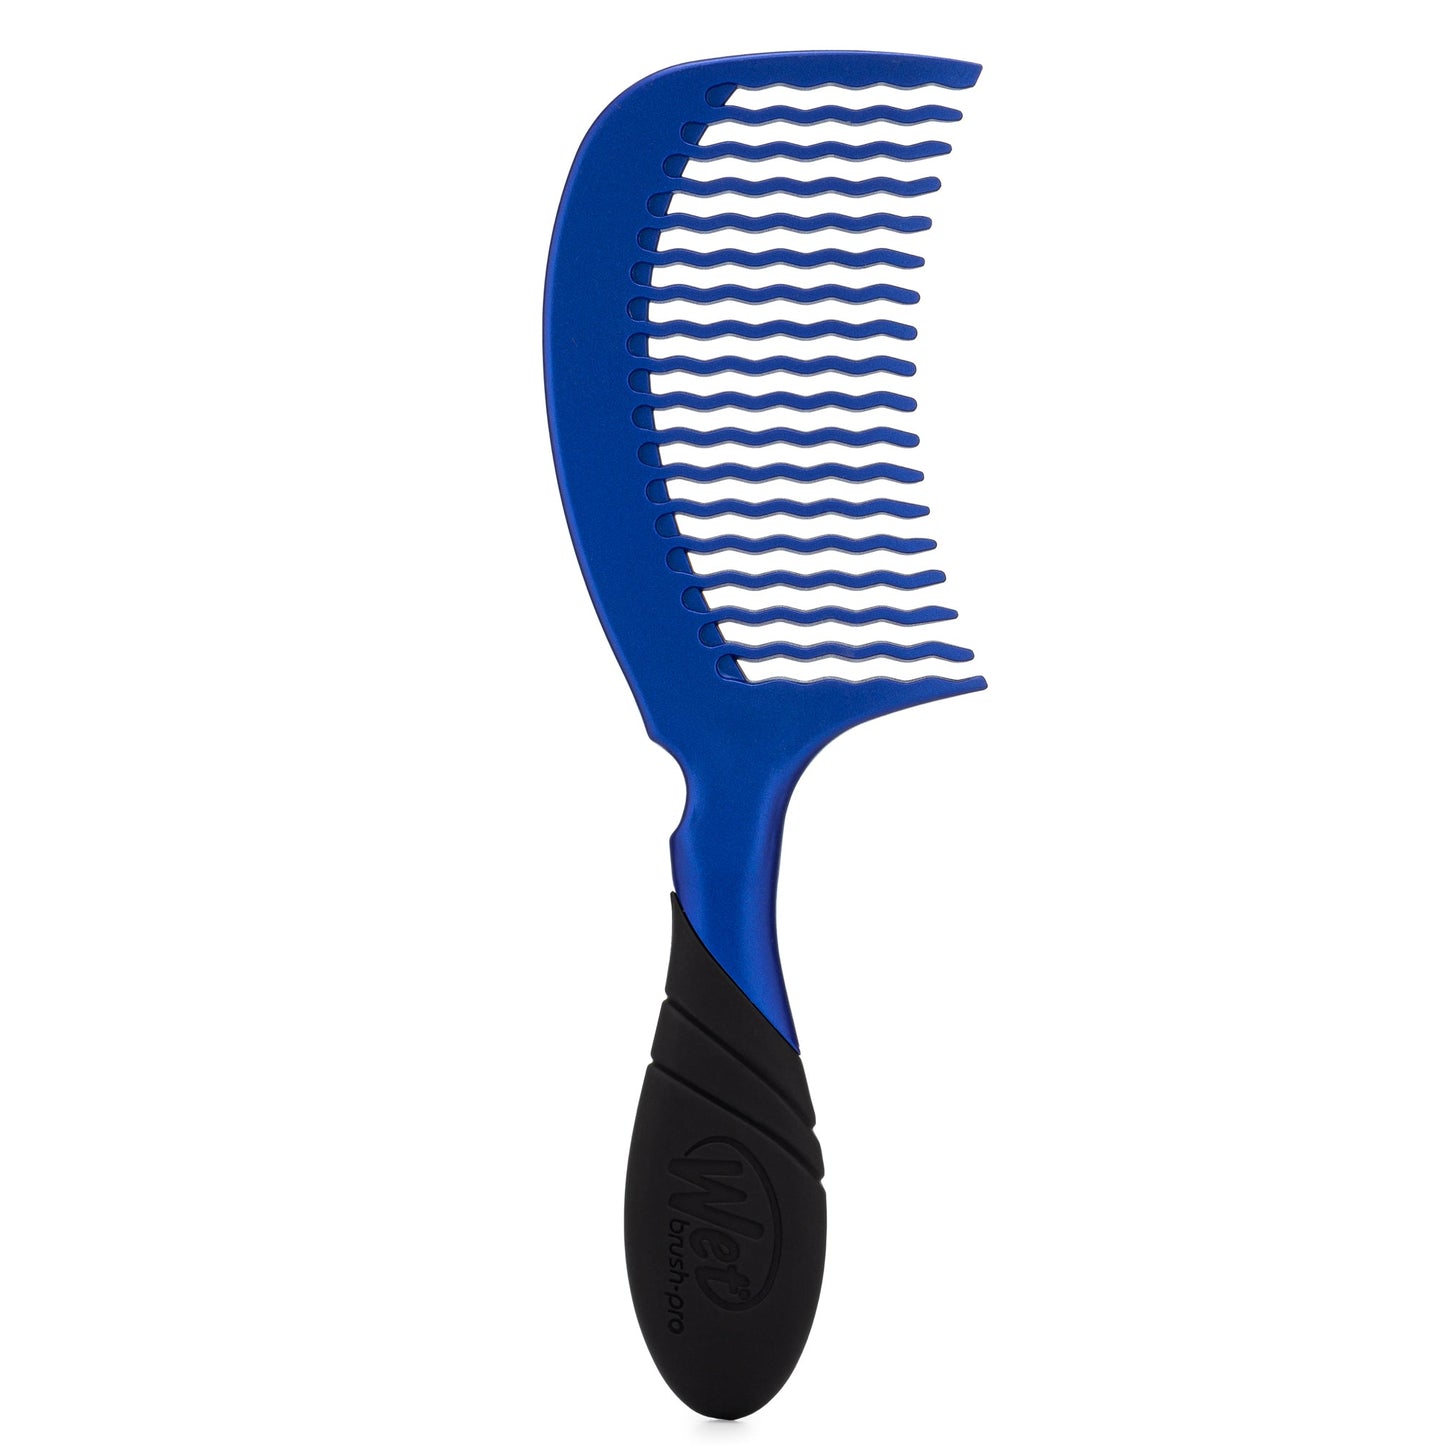 Wet Brush Pro 2.0 Detangling Hair Comb